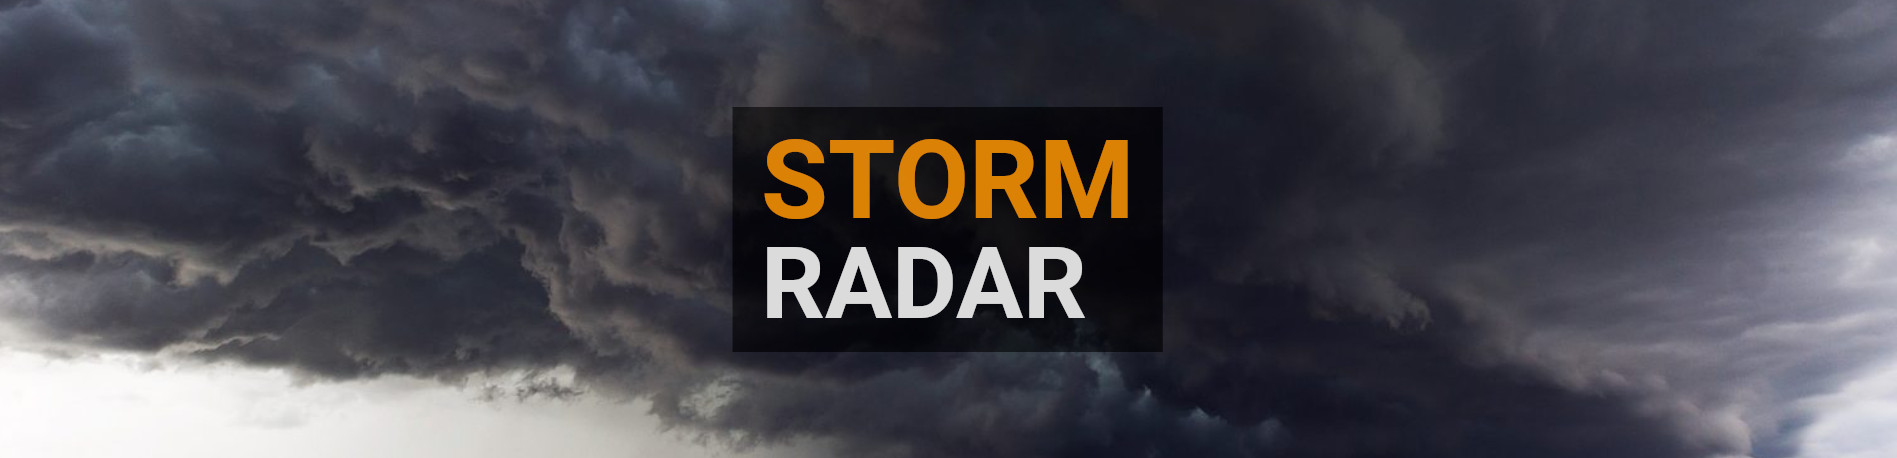 Storm radar